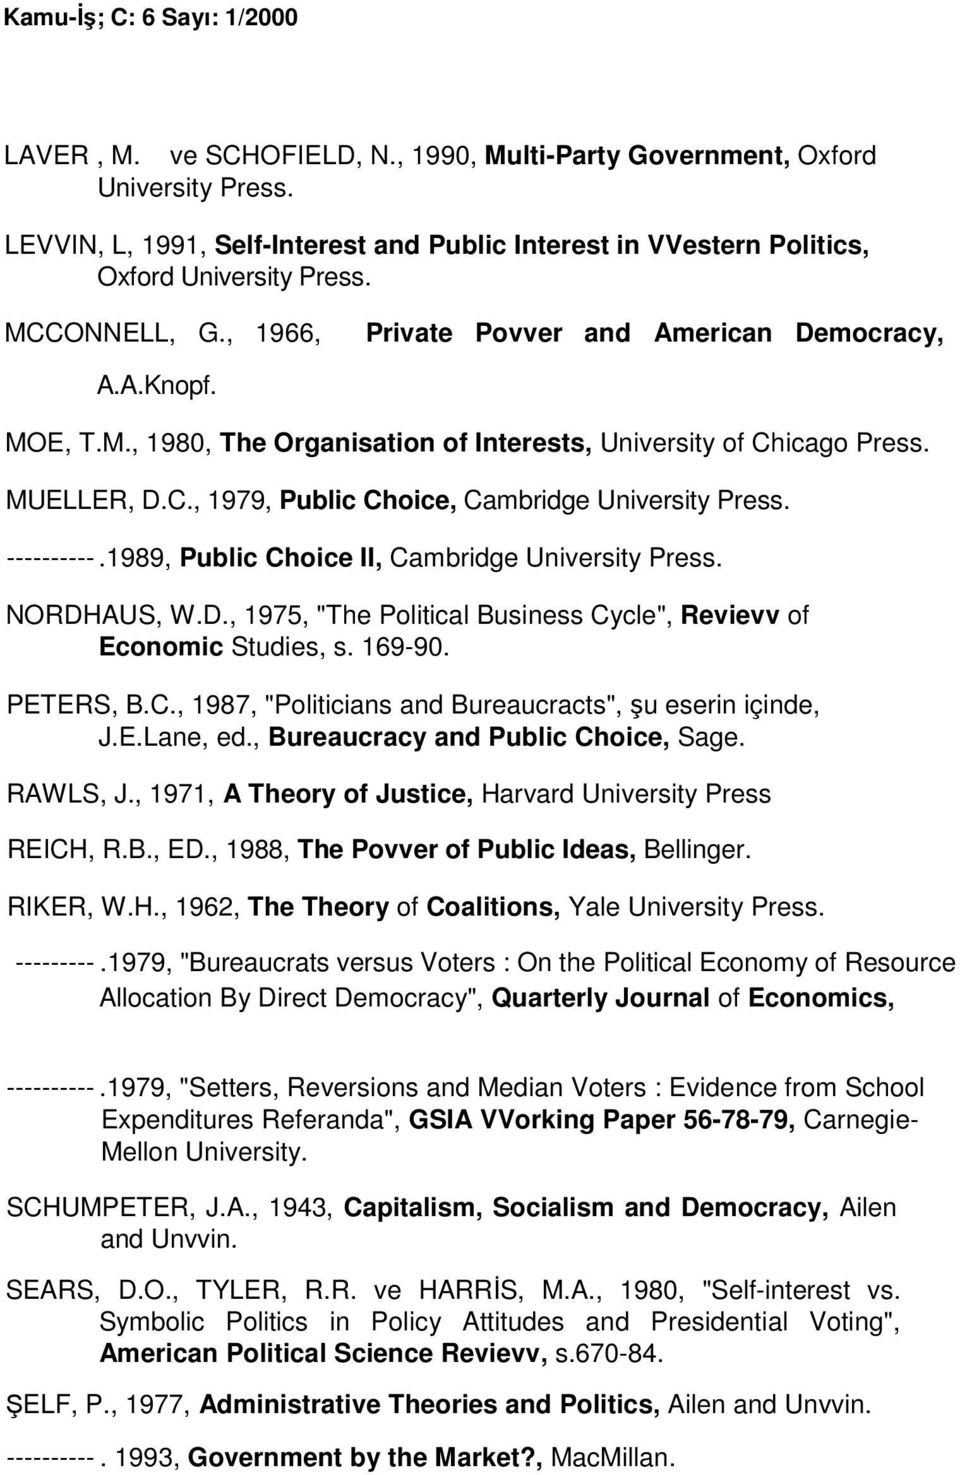 ----------.1989, Public Choice II, Cambridge University Press. NORDHAUS, W.D., 1975, "The Political Business Cycle", Revievv of Economic Studies, s. 169-90. PETERS, B.C., 1987, "Politicians and Bureaucracts", şu eserin içinde, J.